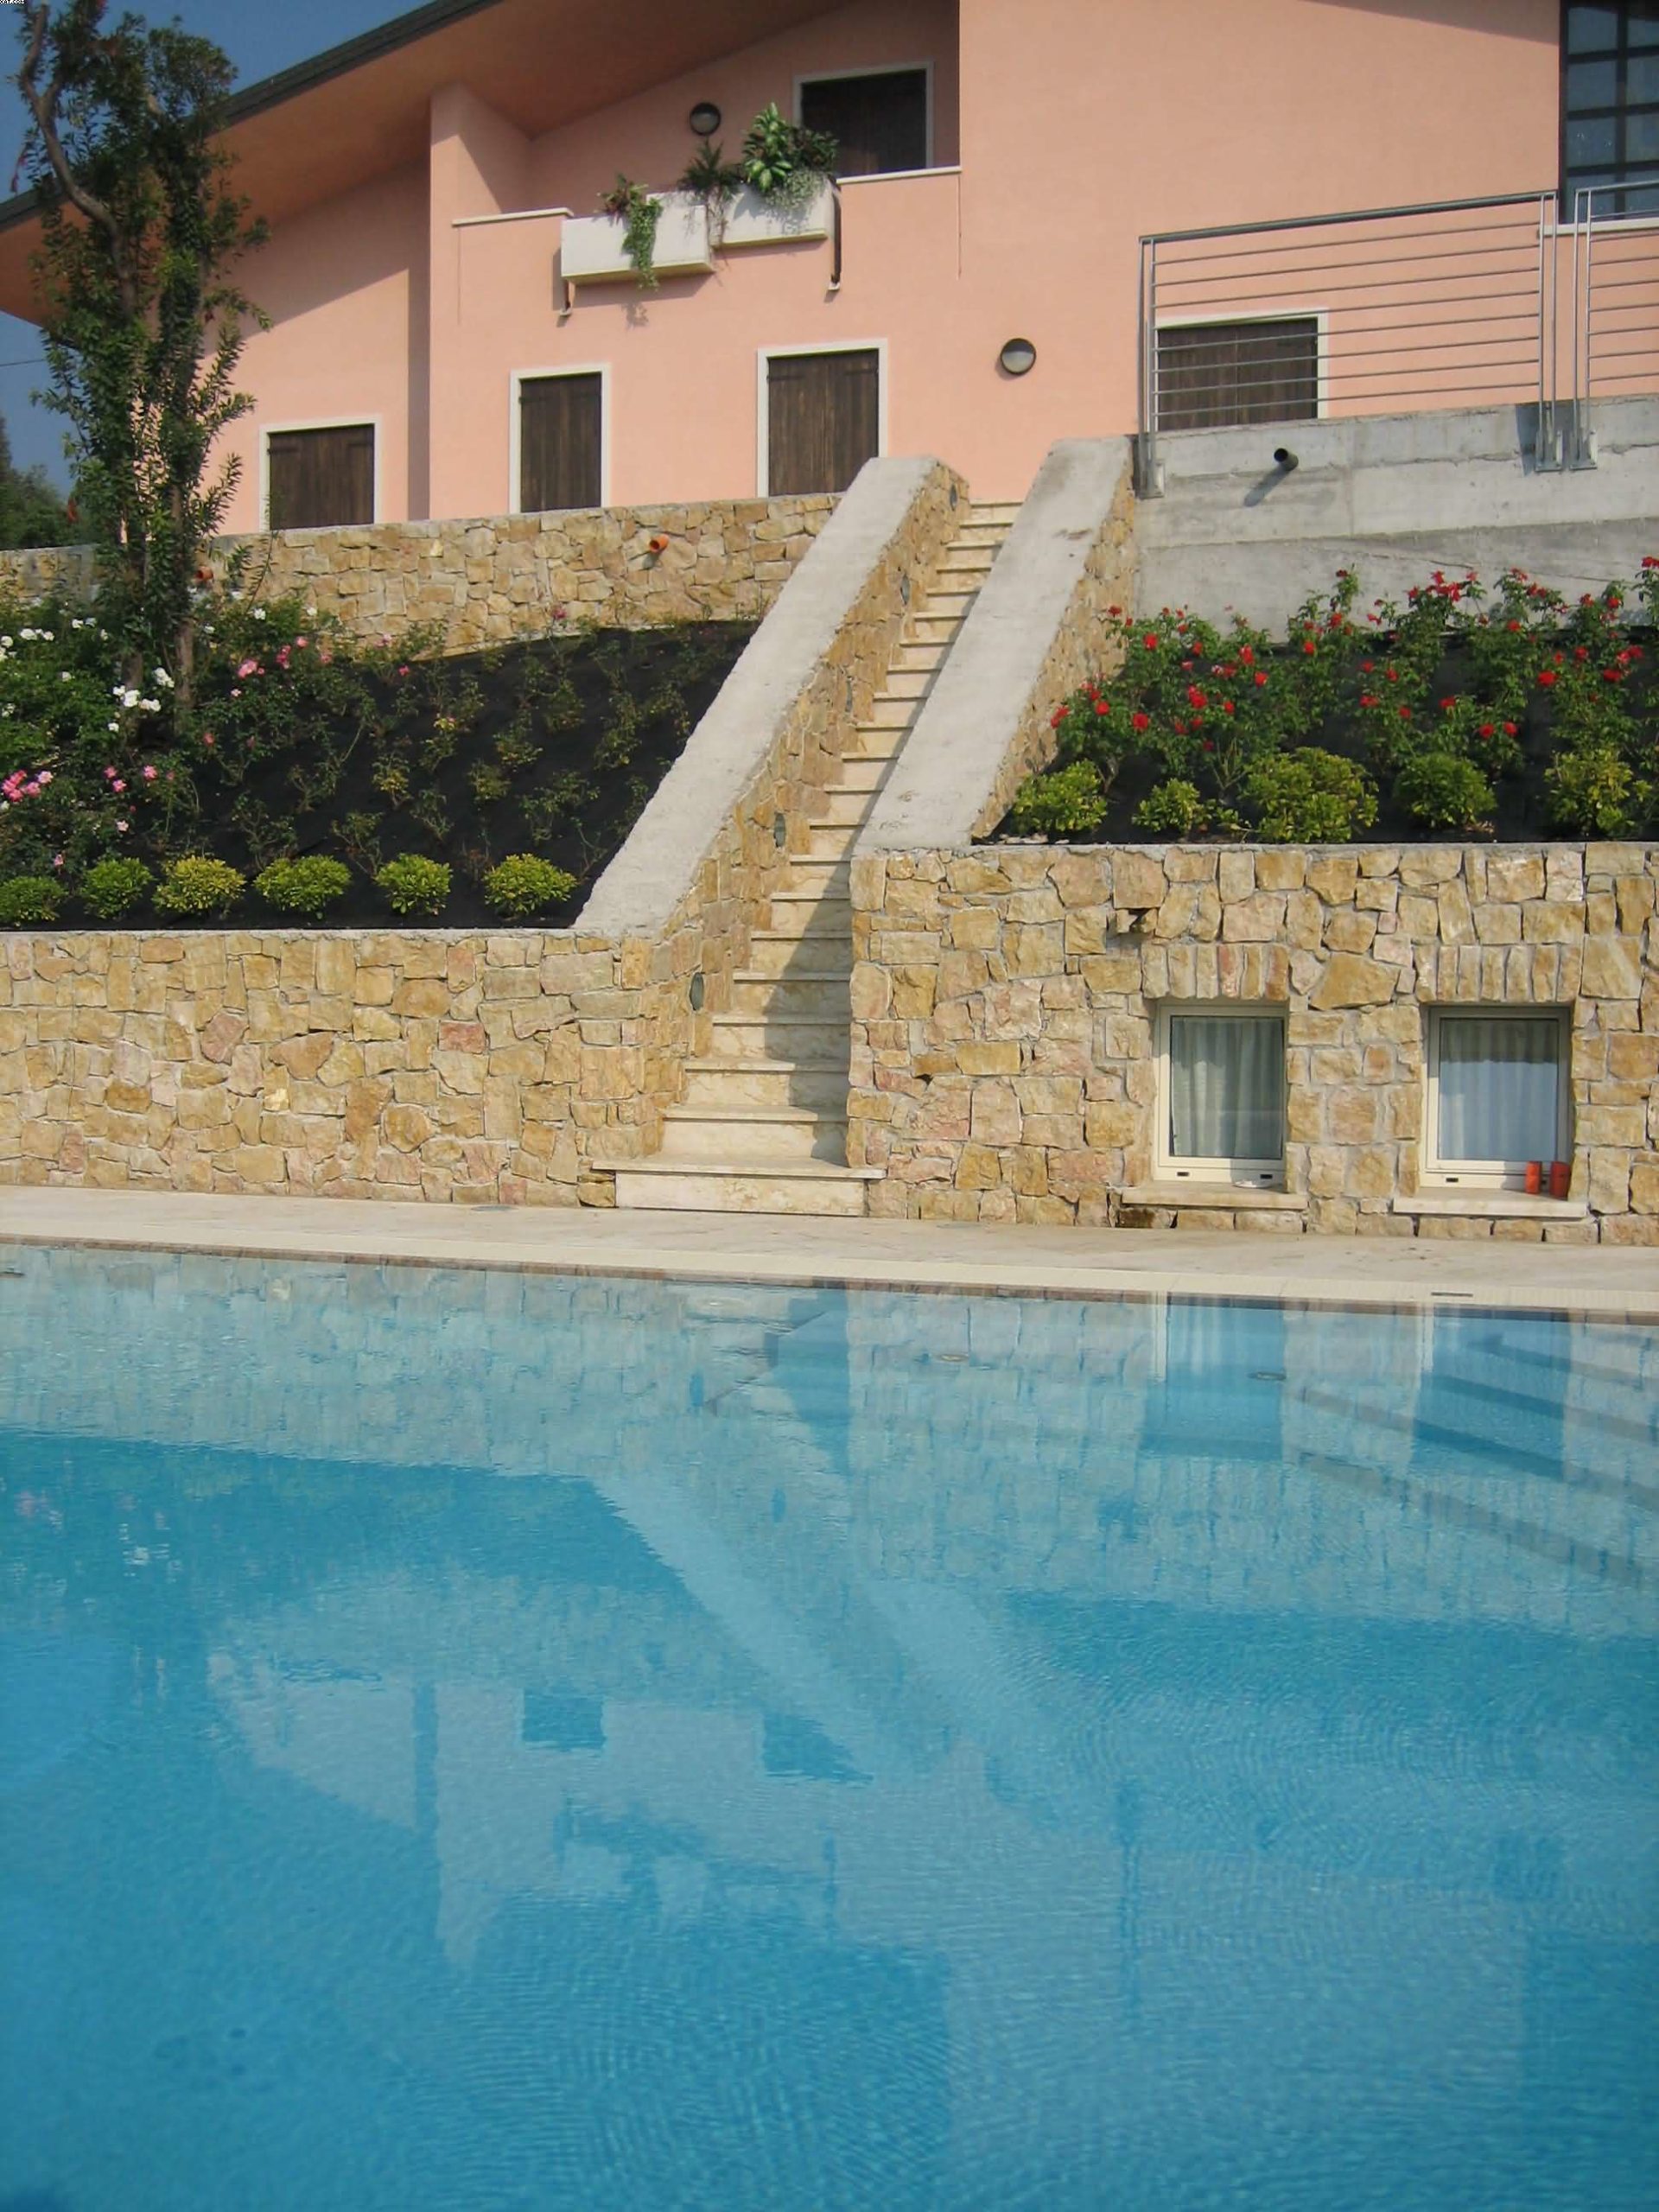 piscina privata in marmo giallo fasani celeste marmi (3)